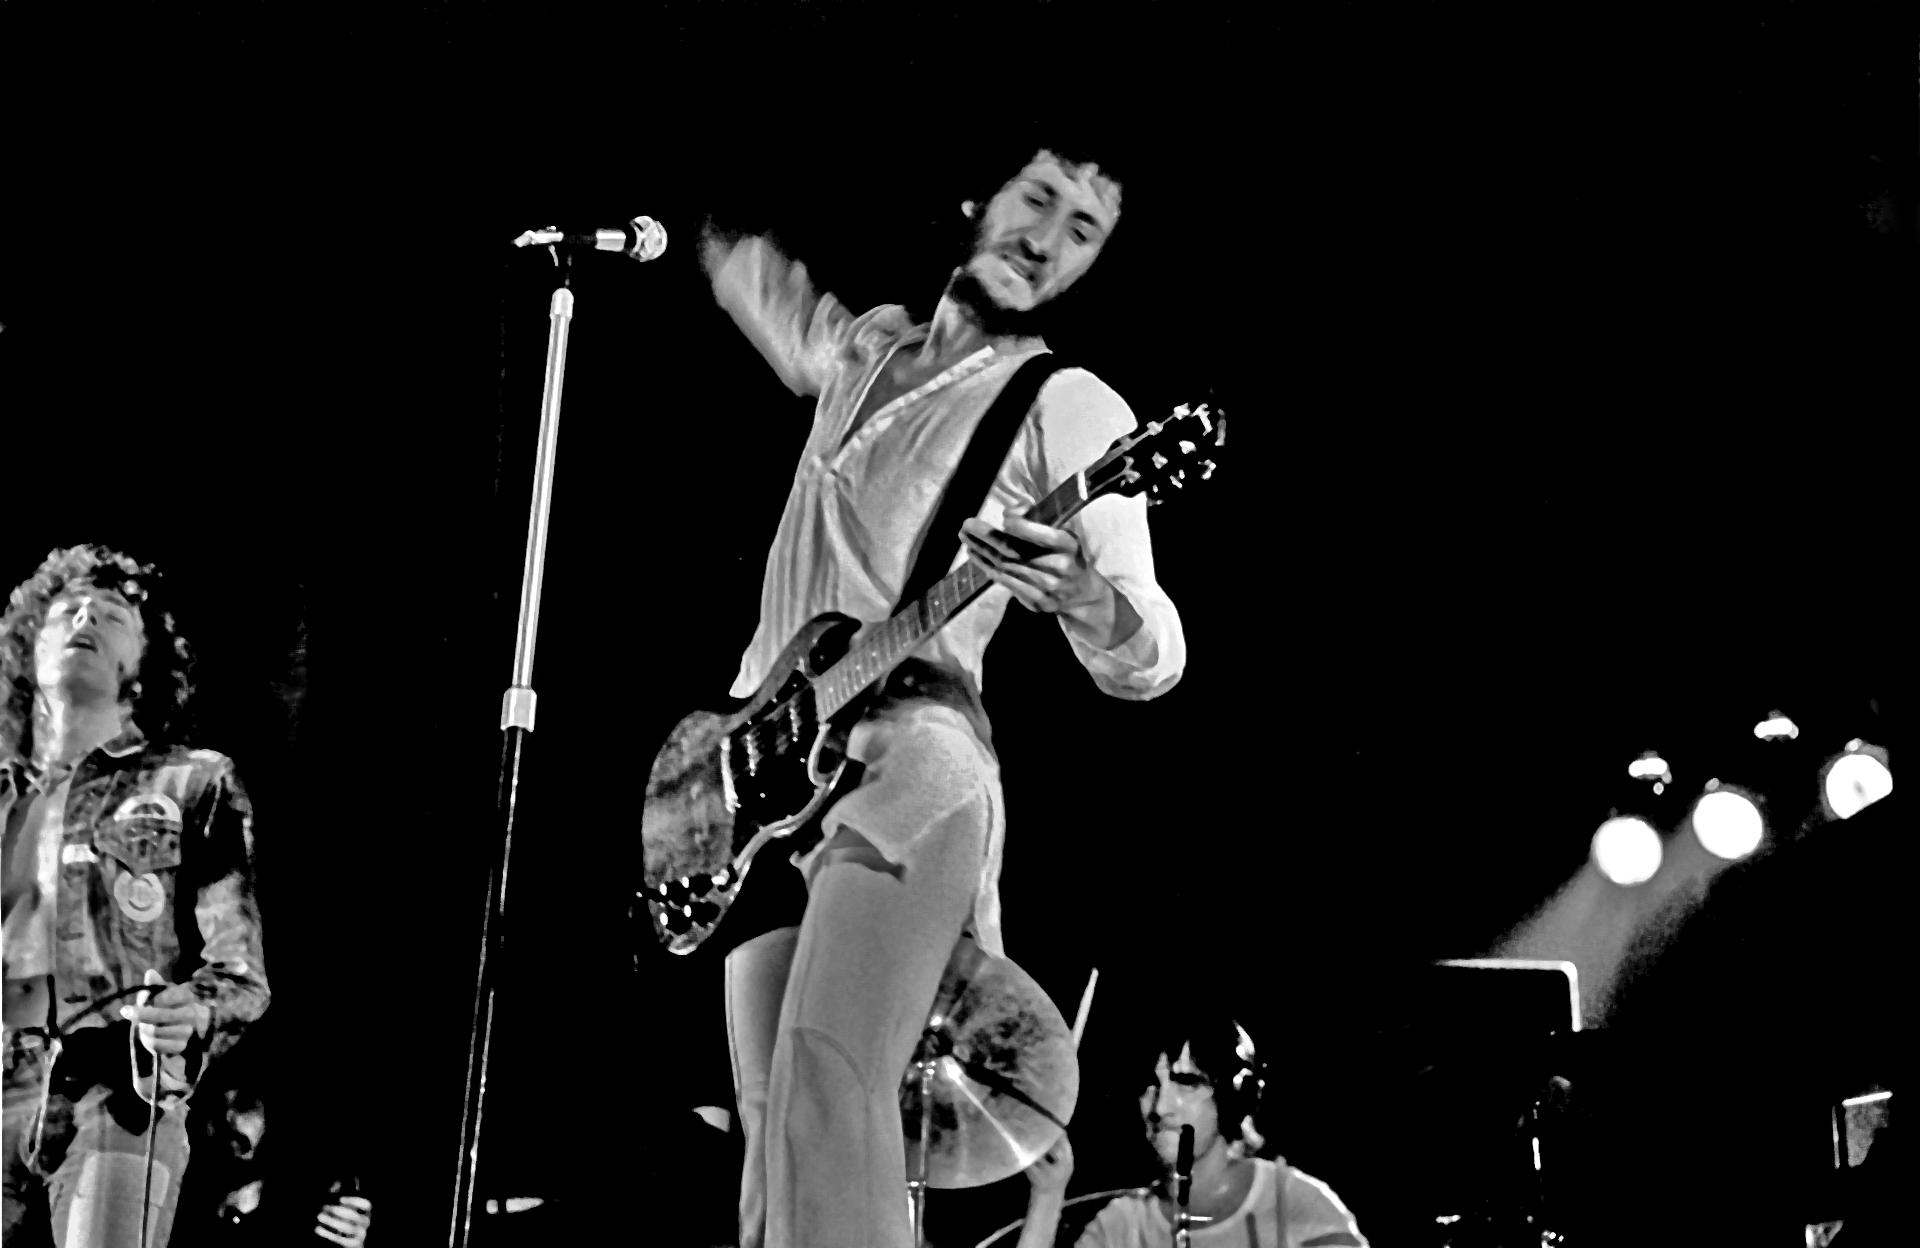 Οι The Who, το ροκ συγκρότημα που έχει γράψει μουσική για το είδος που αργότερα ονομάστηκε «ροκ όπερα», σε συναυλία στο Αμβούργο το 1972.